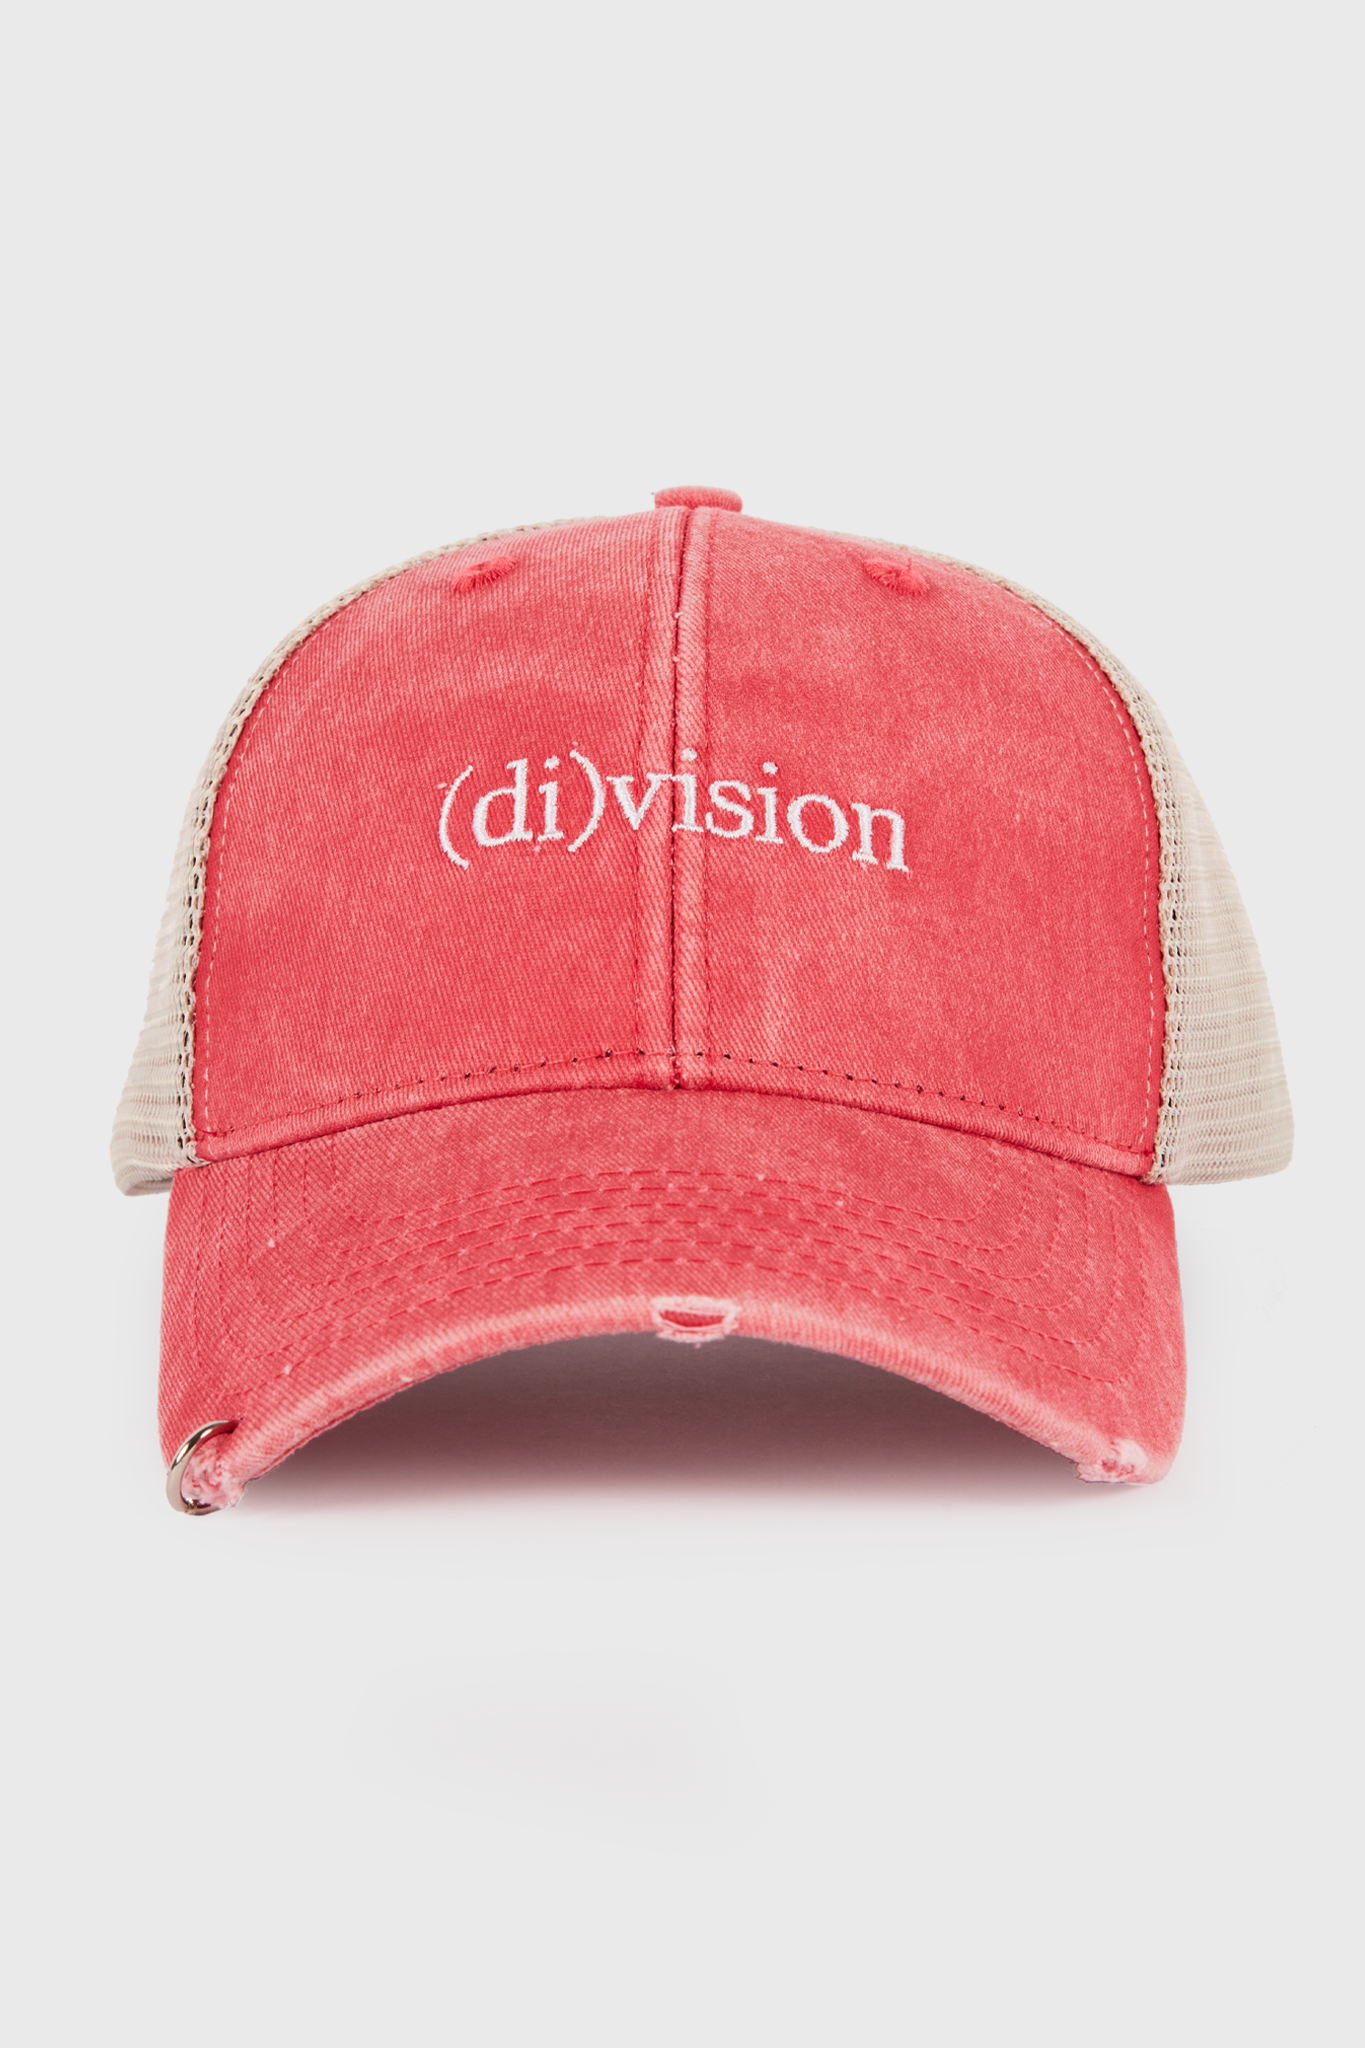 (di)vision logo cap washed red - (di)vision